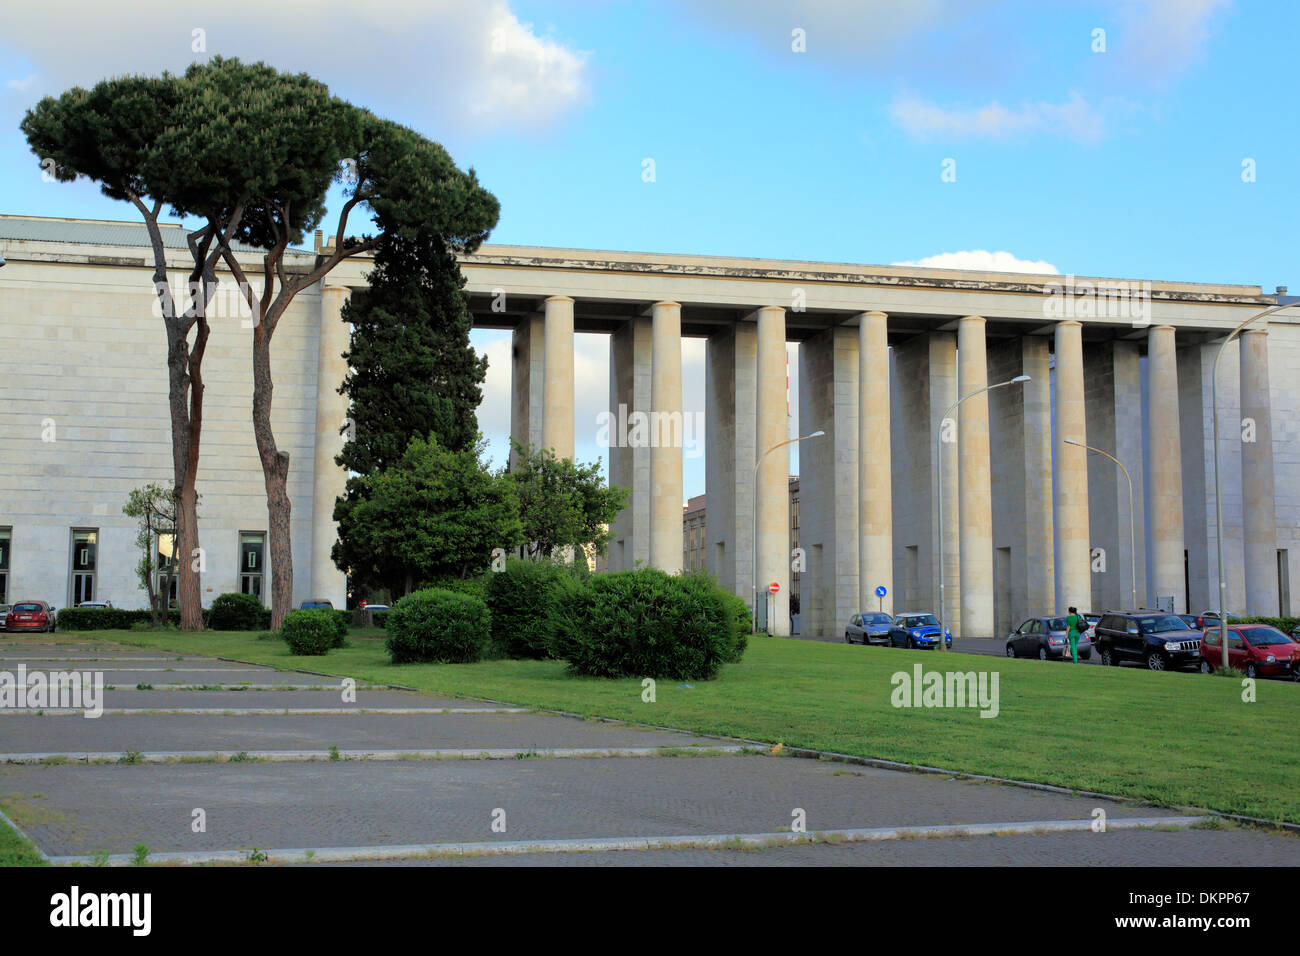 Piazza Guglielmo Marconi, EUR, Rome, Italy Stock Photo